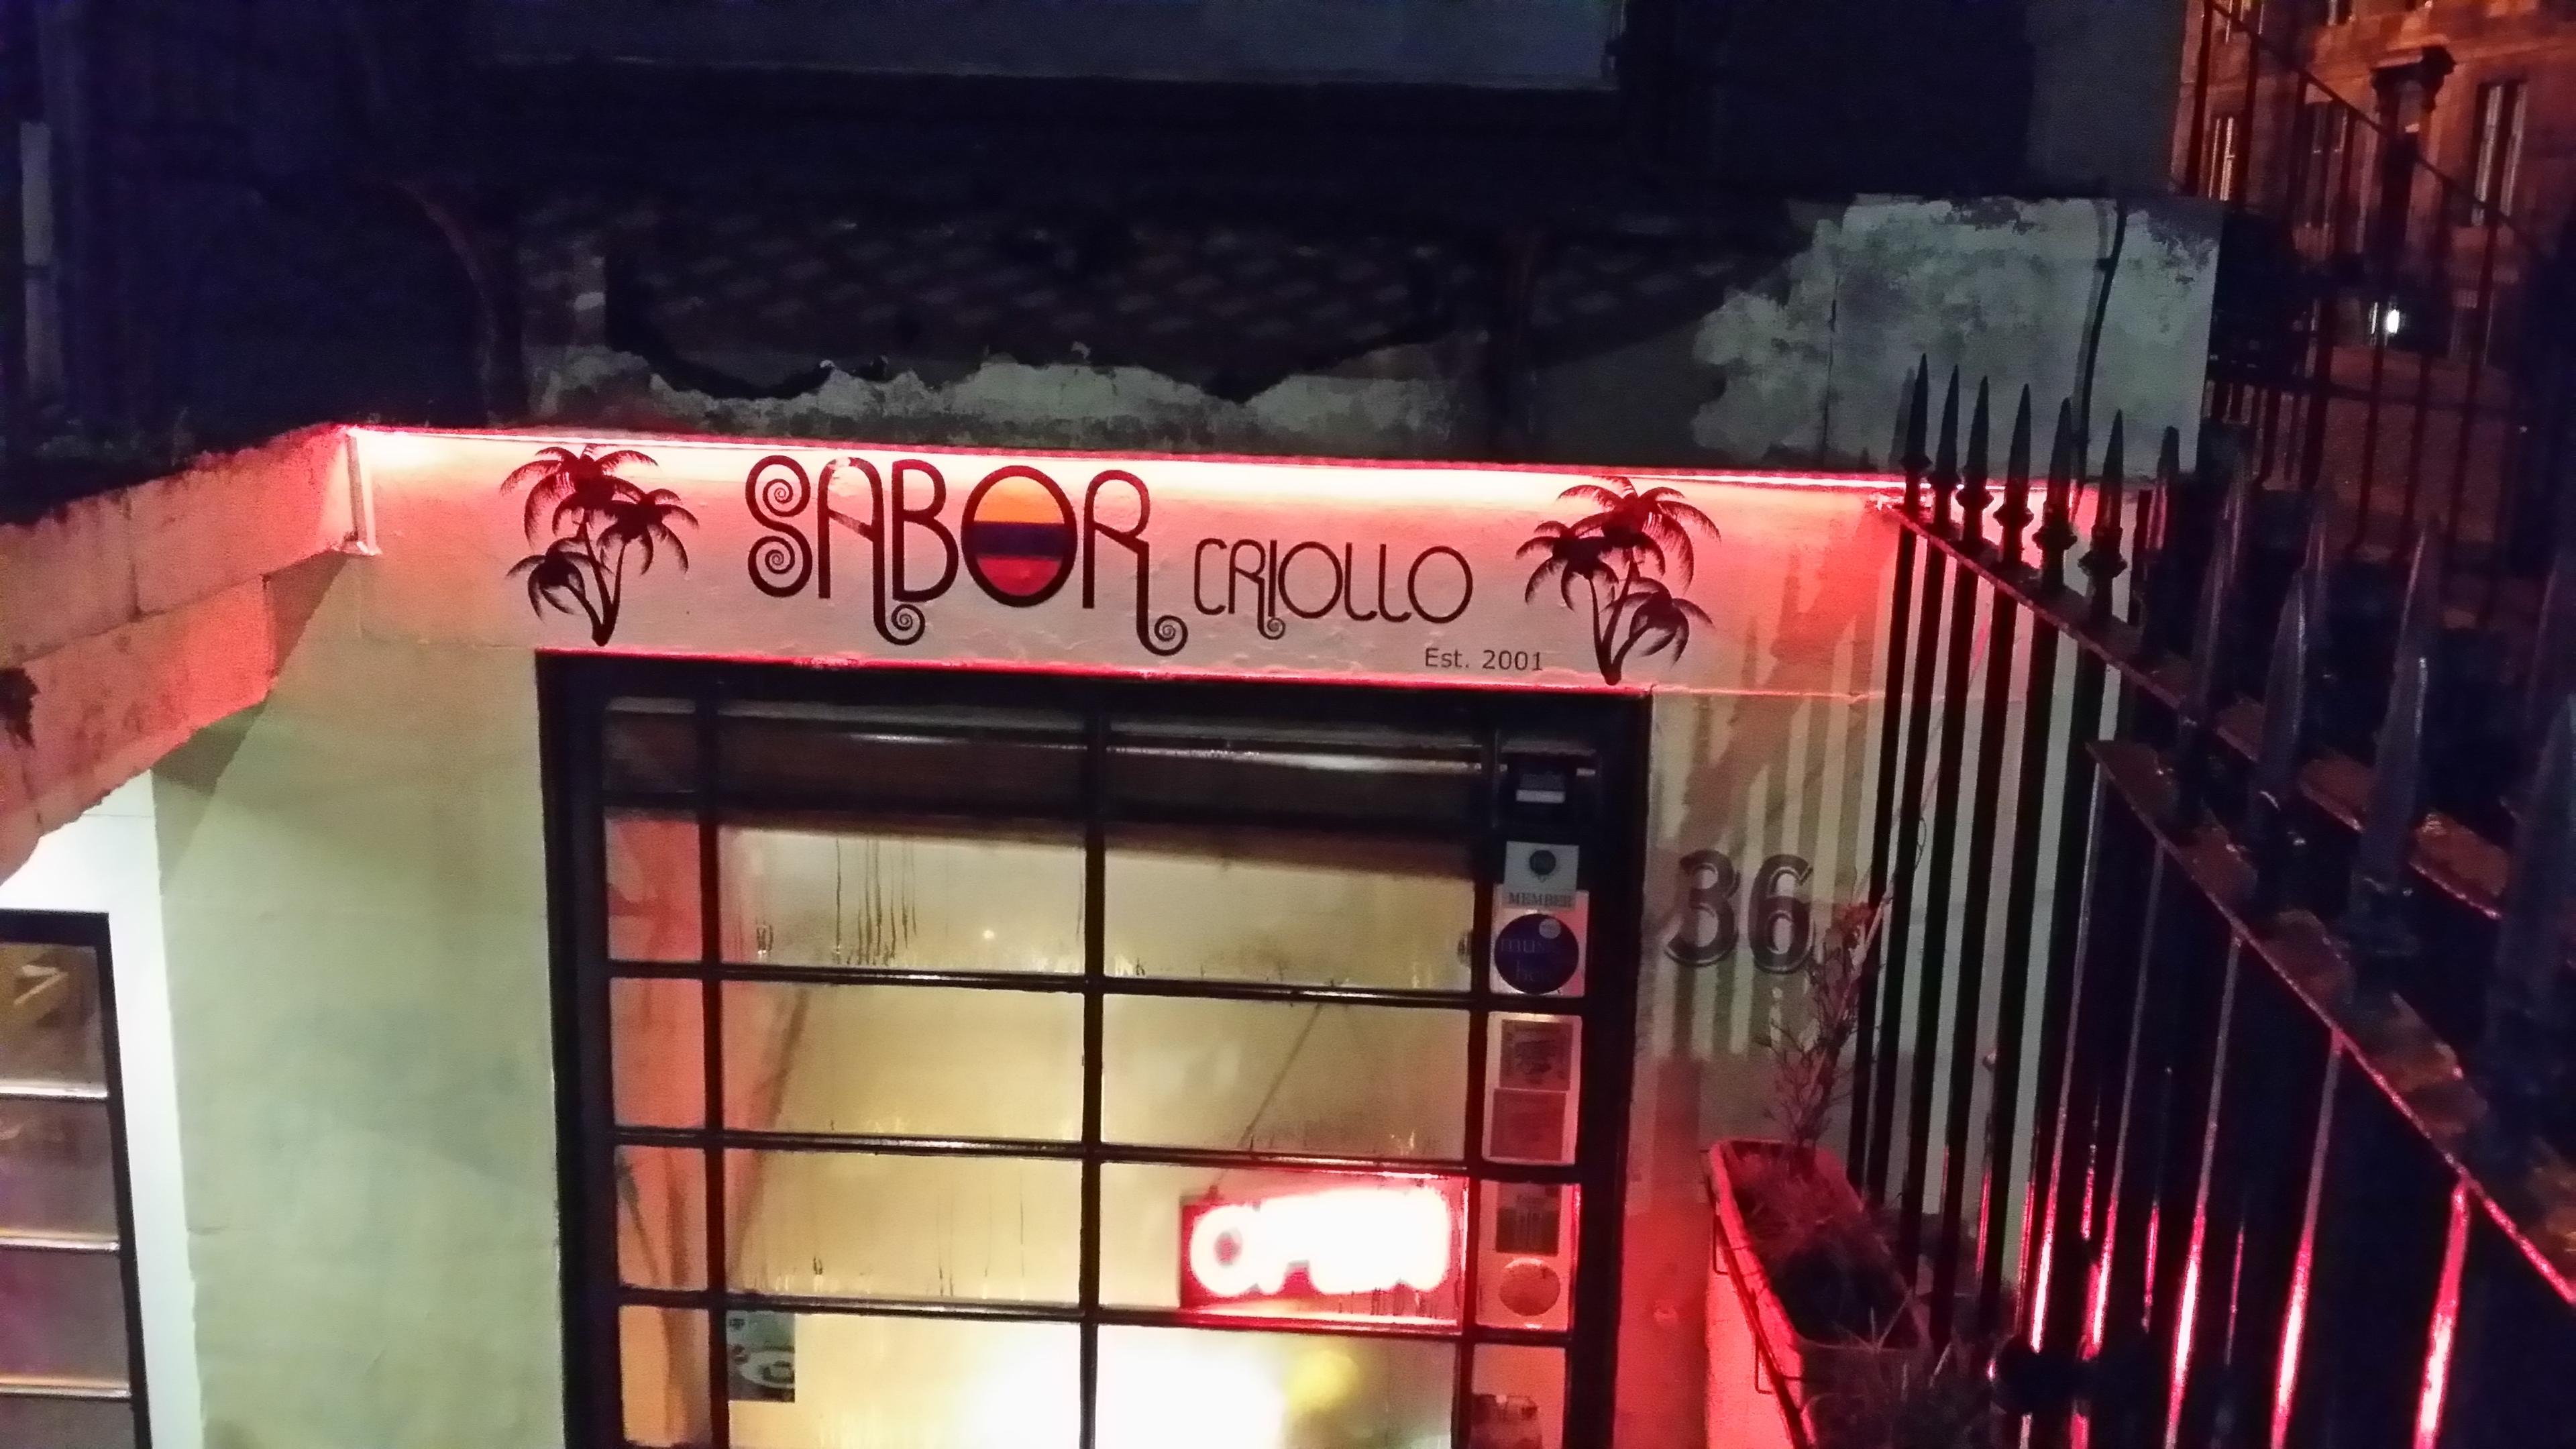 Sabor Criollo, Restaurant photo #1